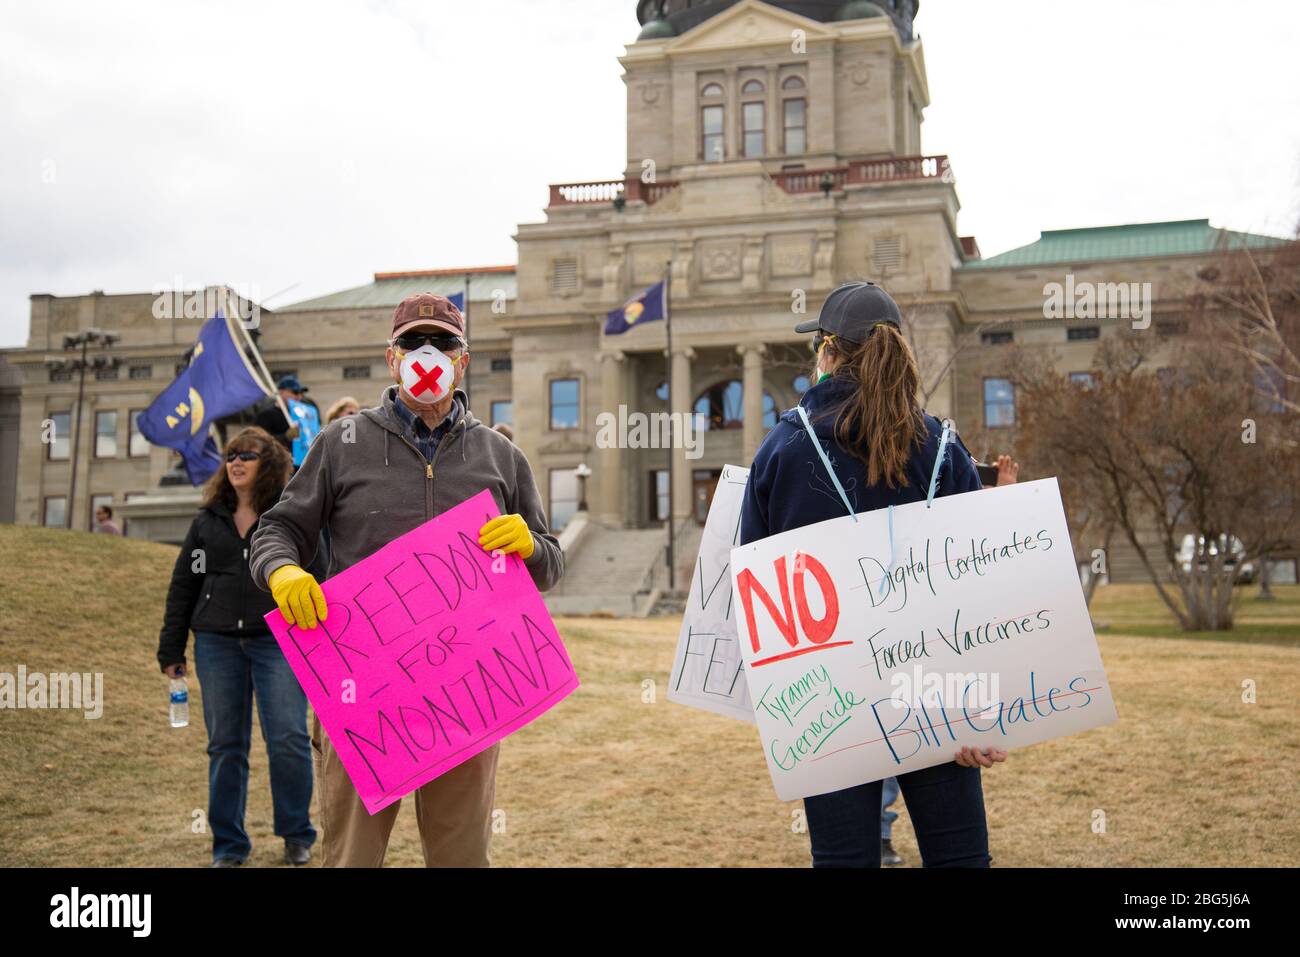 Helena, Montana - 19 avril 2020: Des manifestants protestent au Capitole en portant des masques, des gants et en tenant des panneaux pour la liberté et contre les vaccins, Banque D'Images